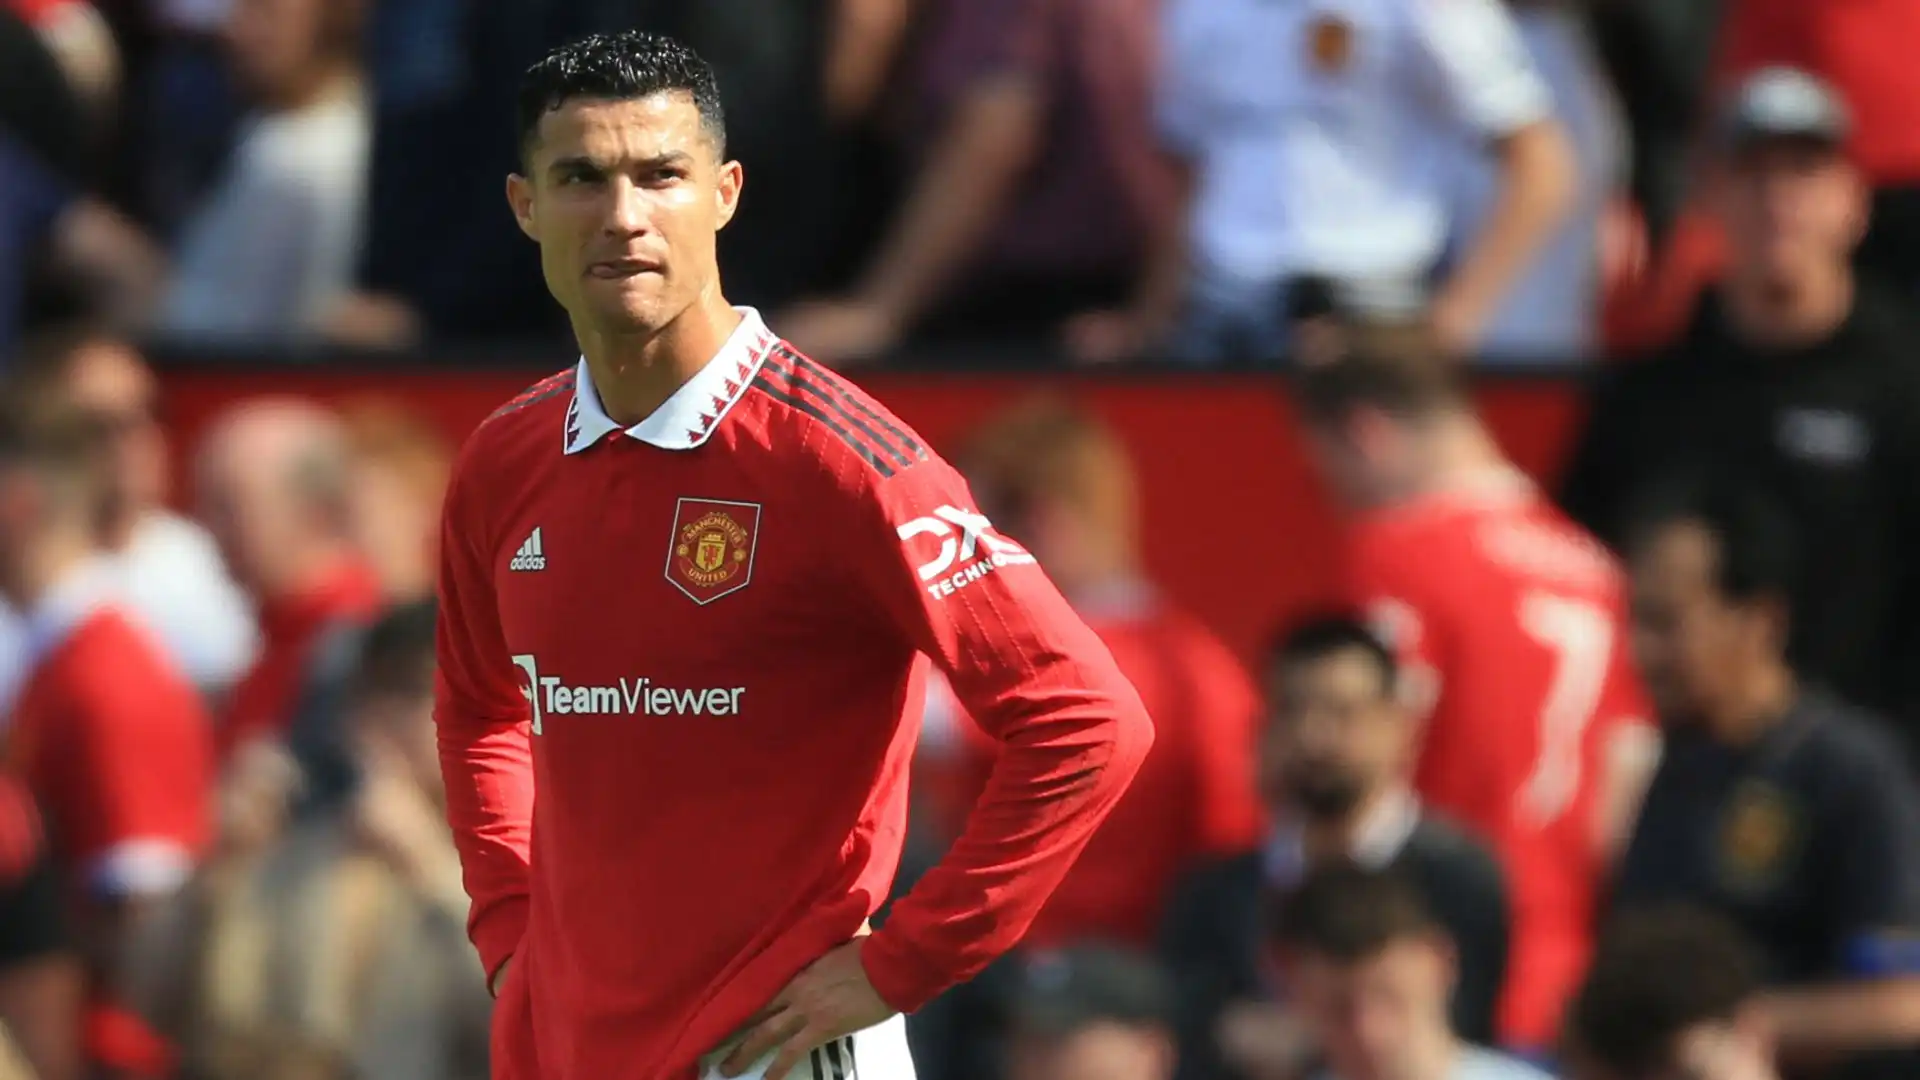 Il castigo è finito: Cristiano Ronaldo torna in campo, ma questo non è sufficiente al Manchester United per evitare il ko